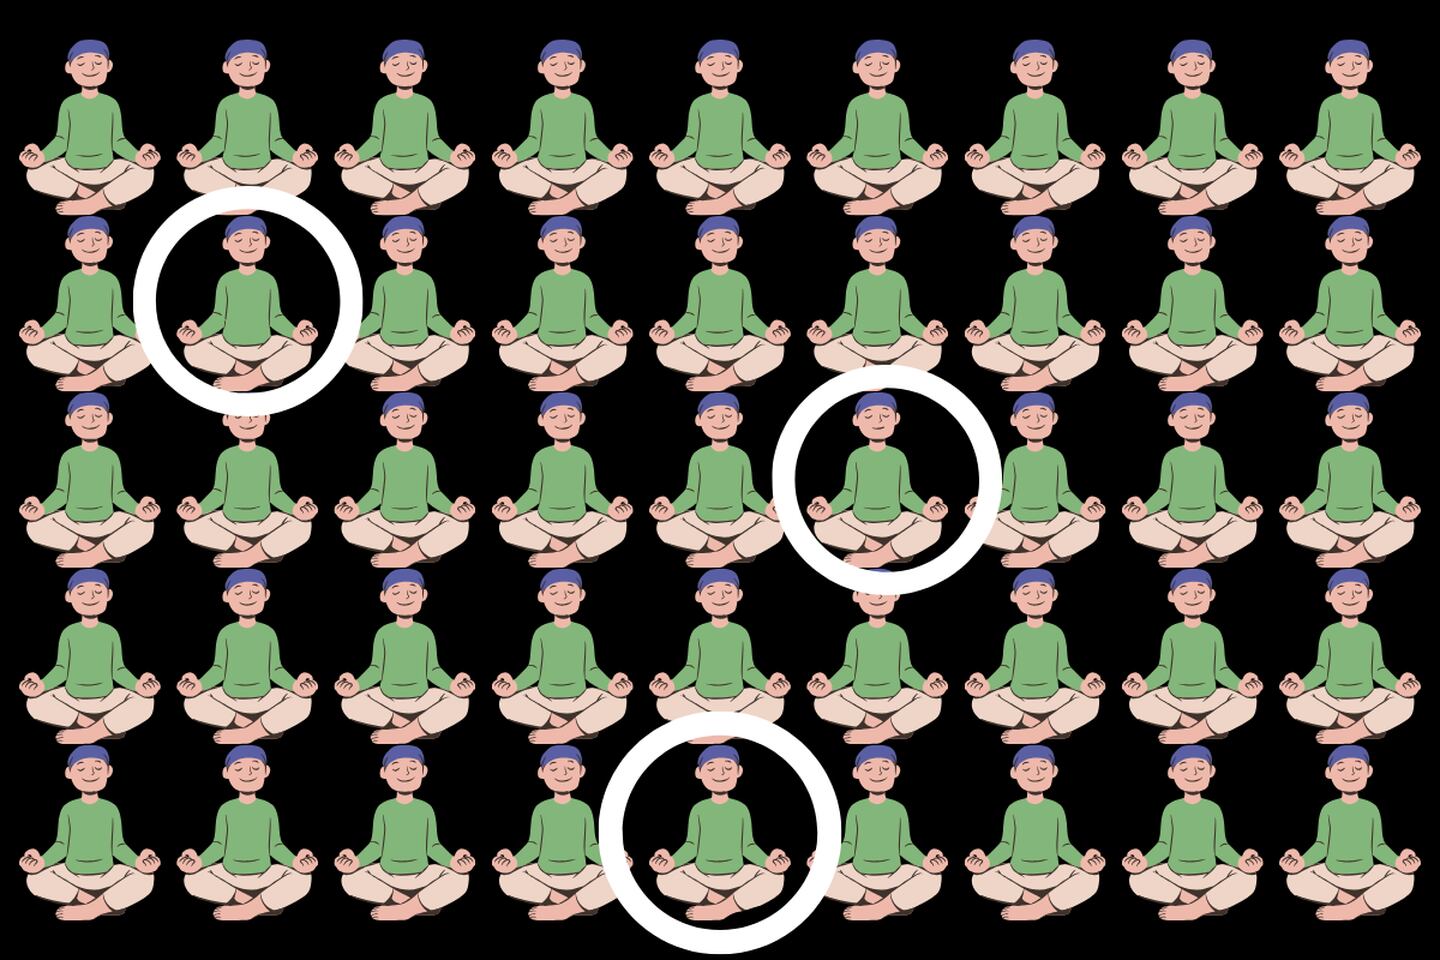 En este test visual pareciera que hay muchos hombres iguales meditando, pero hay tres que se diferencian en pequeños detalles.